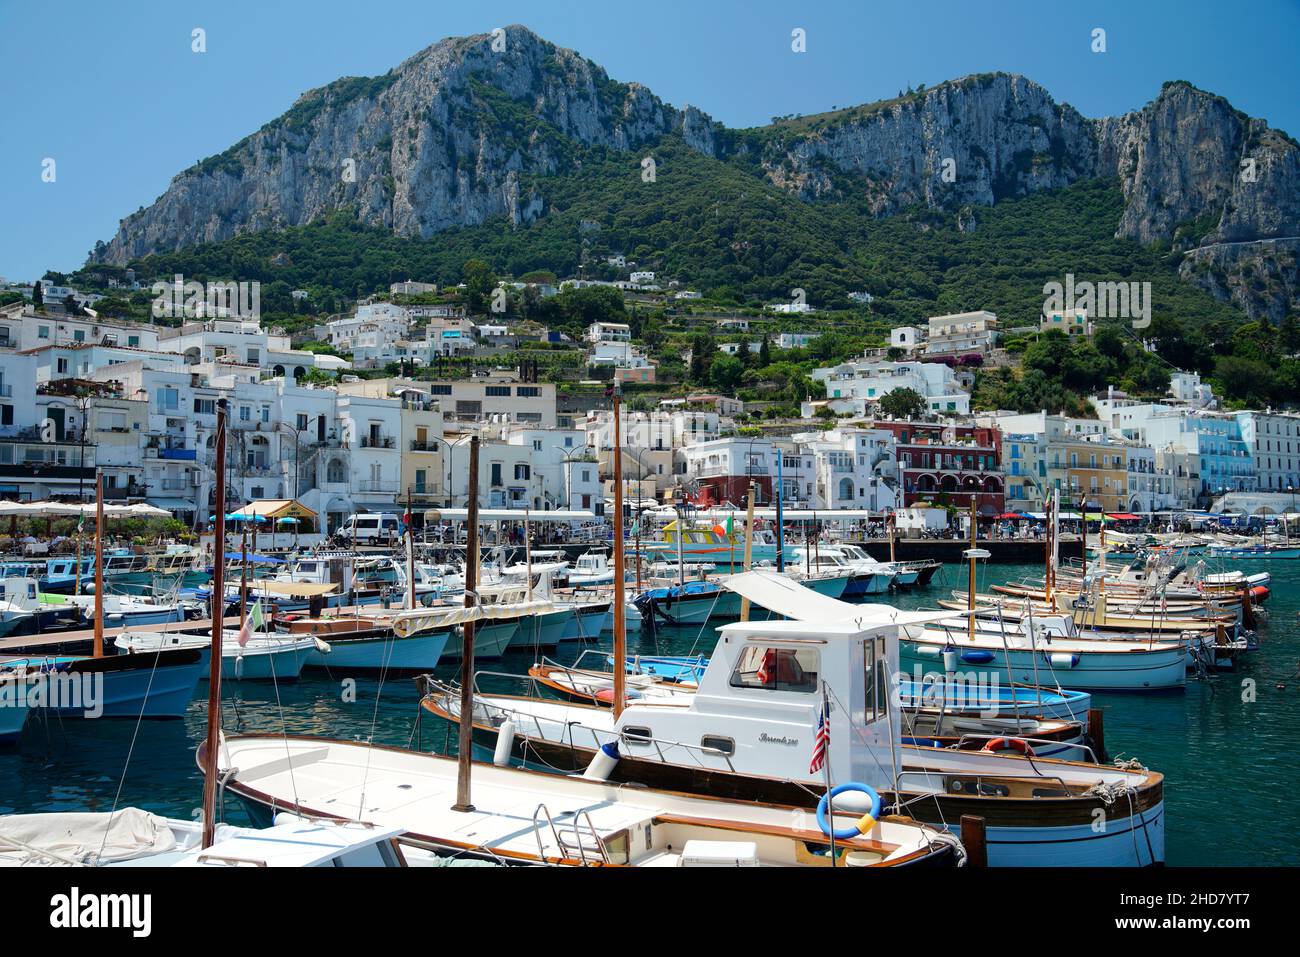 Port of Capri, Porto di Capri, Campania, Italy Stock Photo